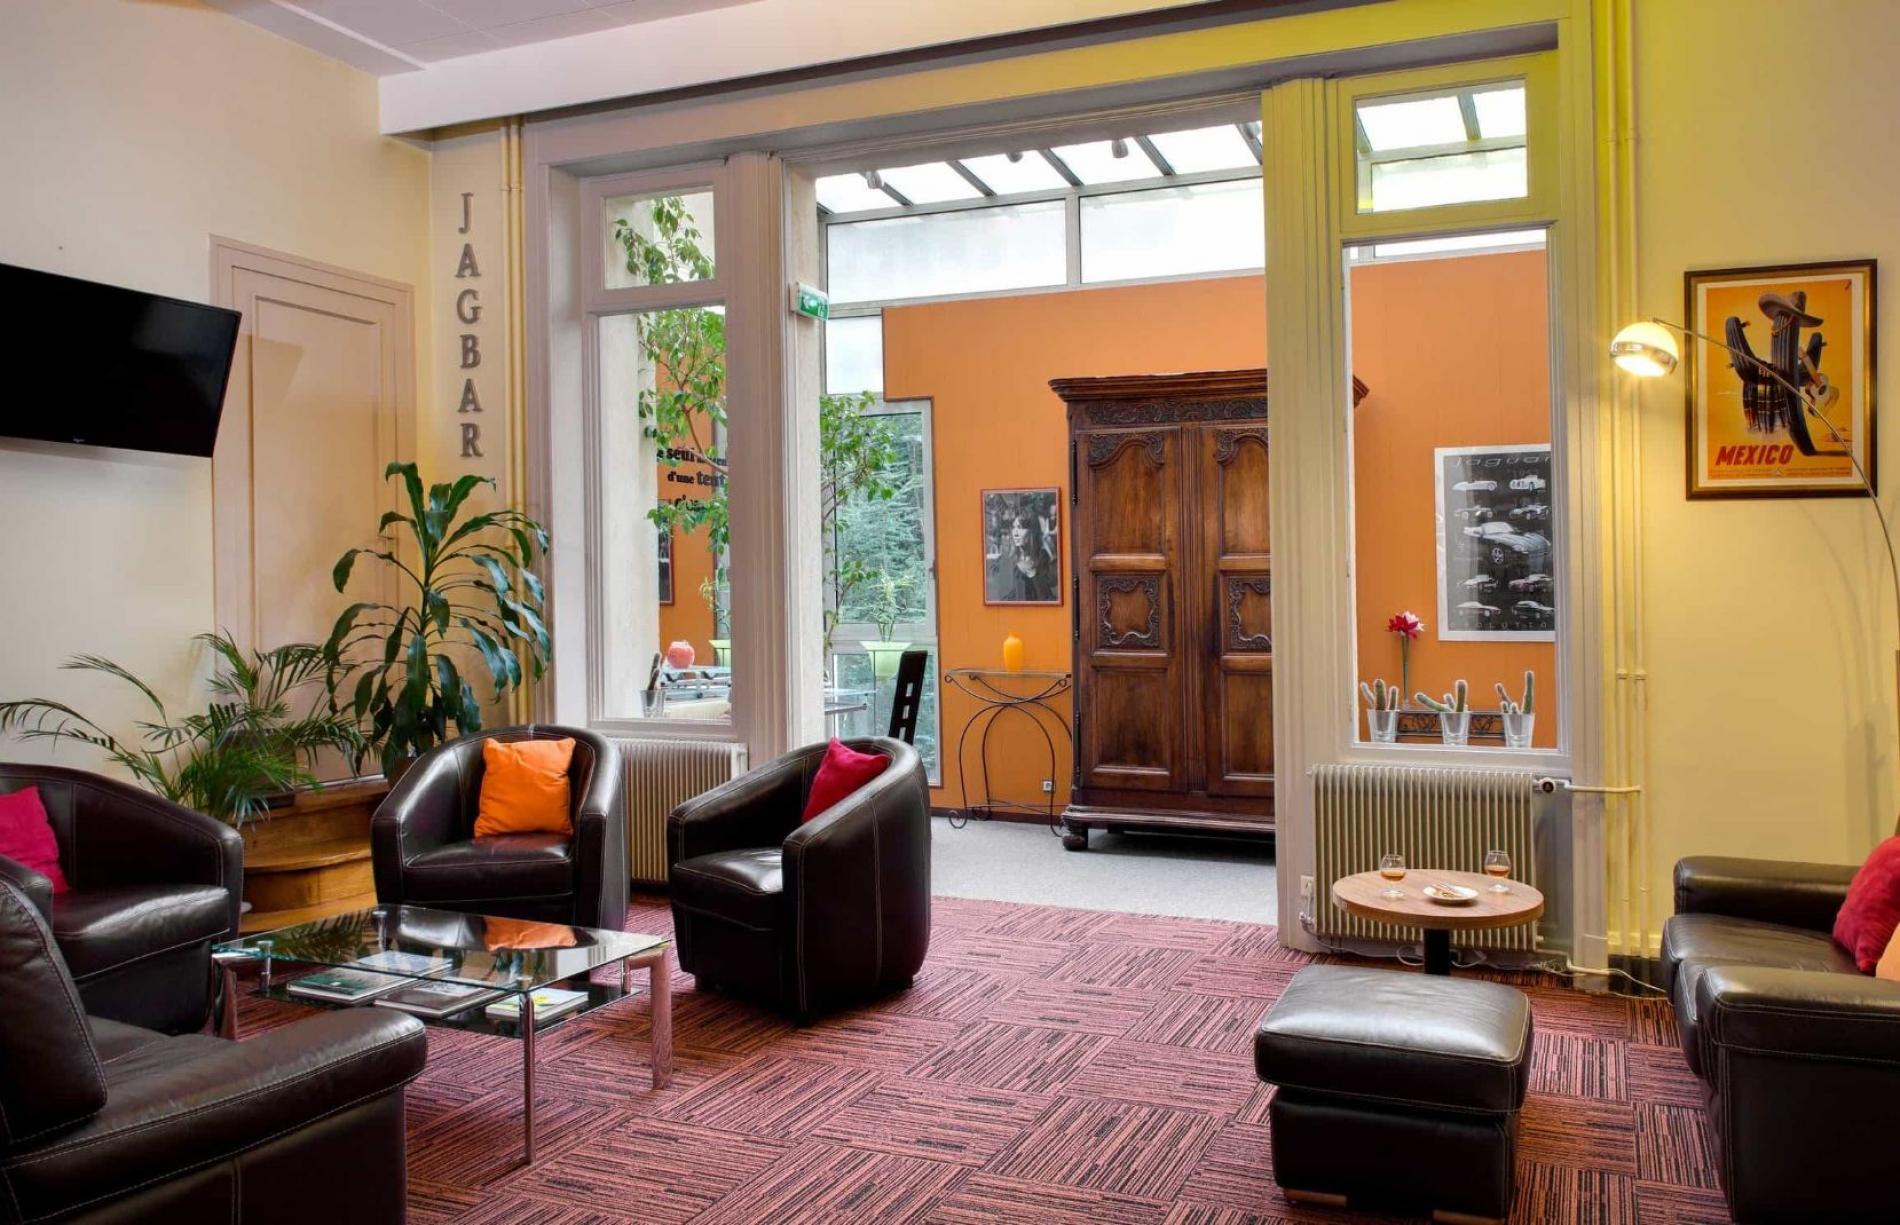 Situé dans le sud de Saint-Étienne,  l’Hôtel du Midi vous propose une  décoration originale, inspirée  des années 1930